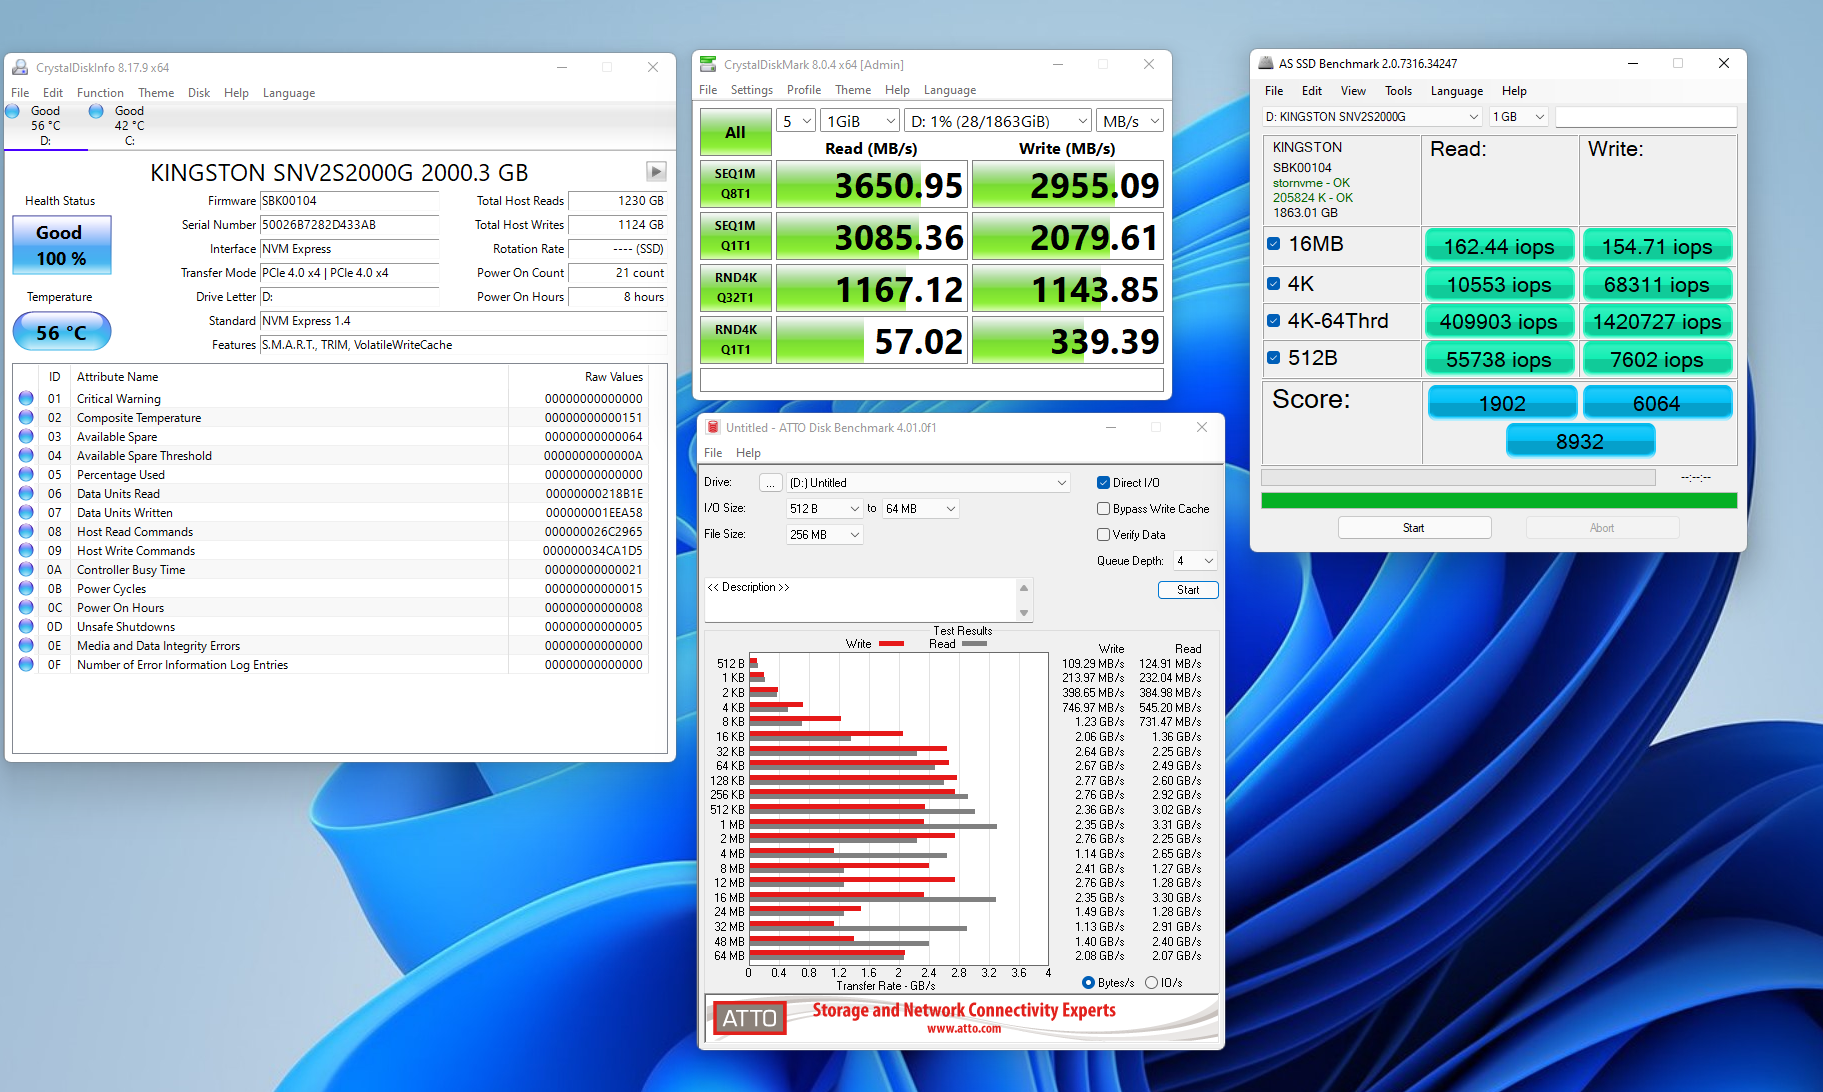 Đánh giá SSD Kingston NV2 PCIe 4.0 NVMe 2TB: Tốc độ cao, dung lượng lớn với mức giá tốt